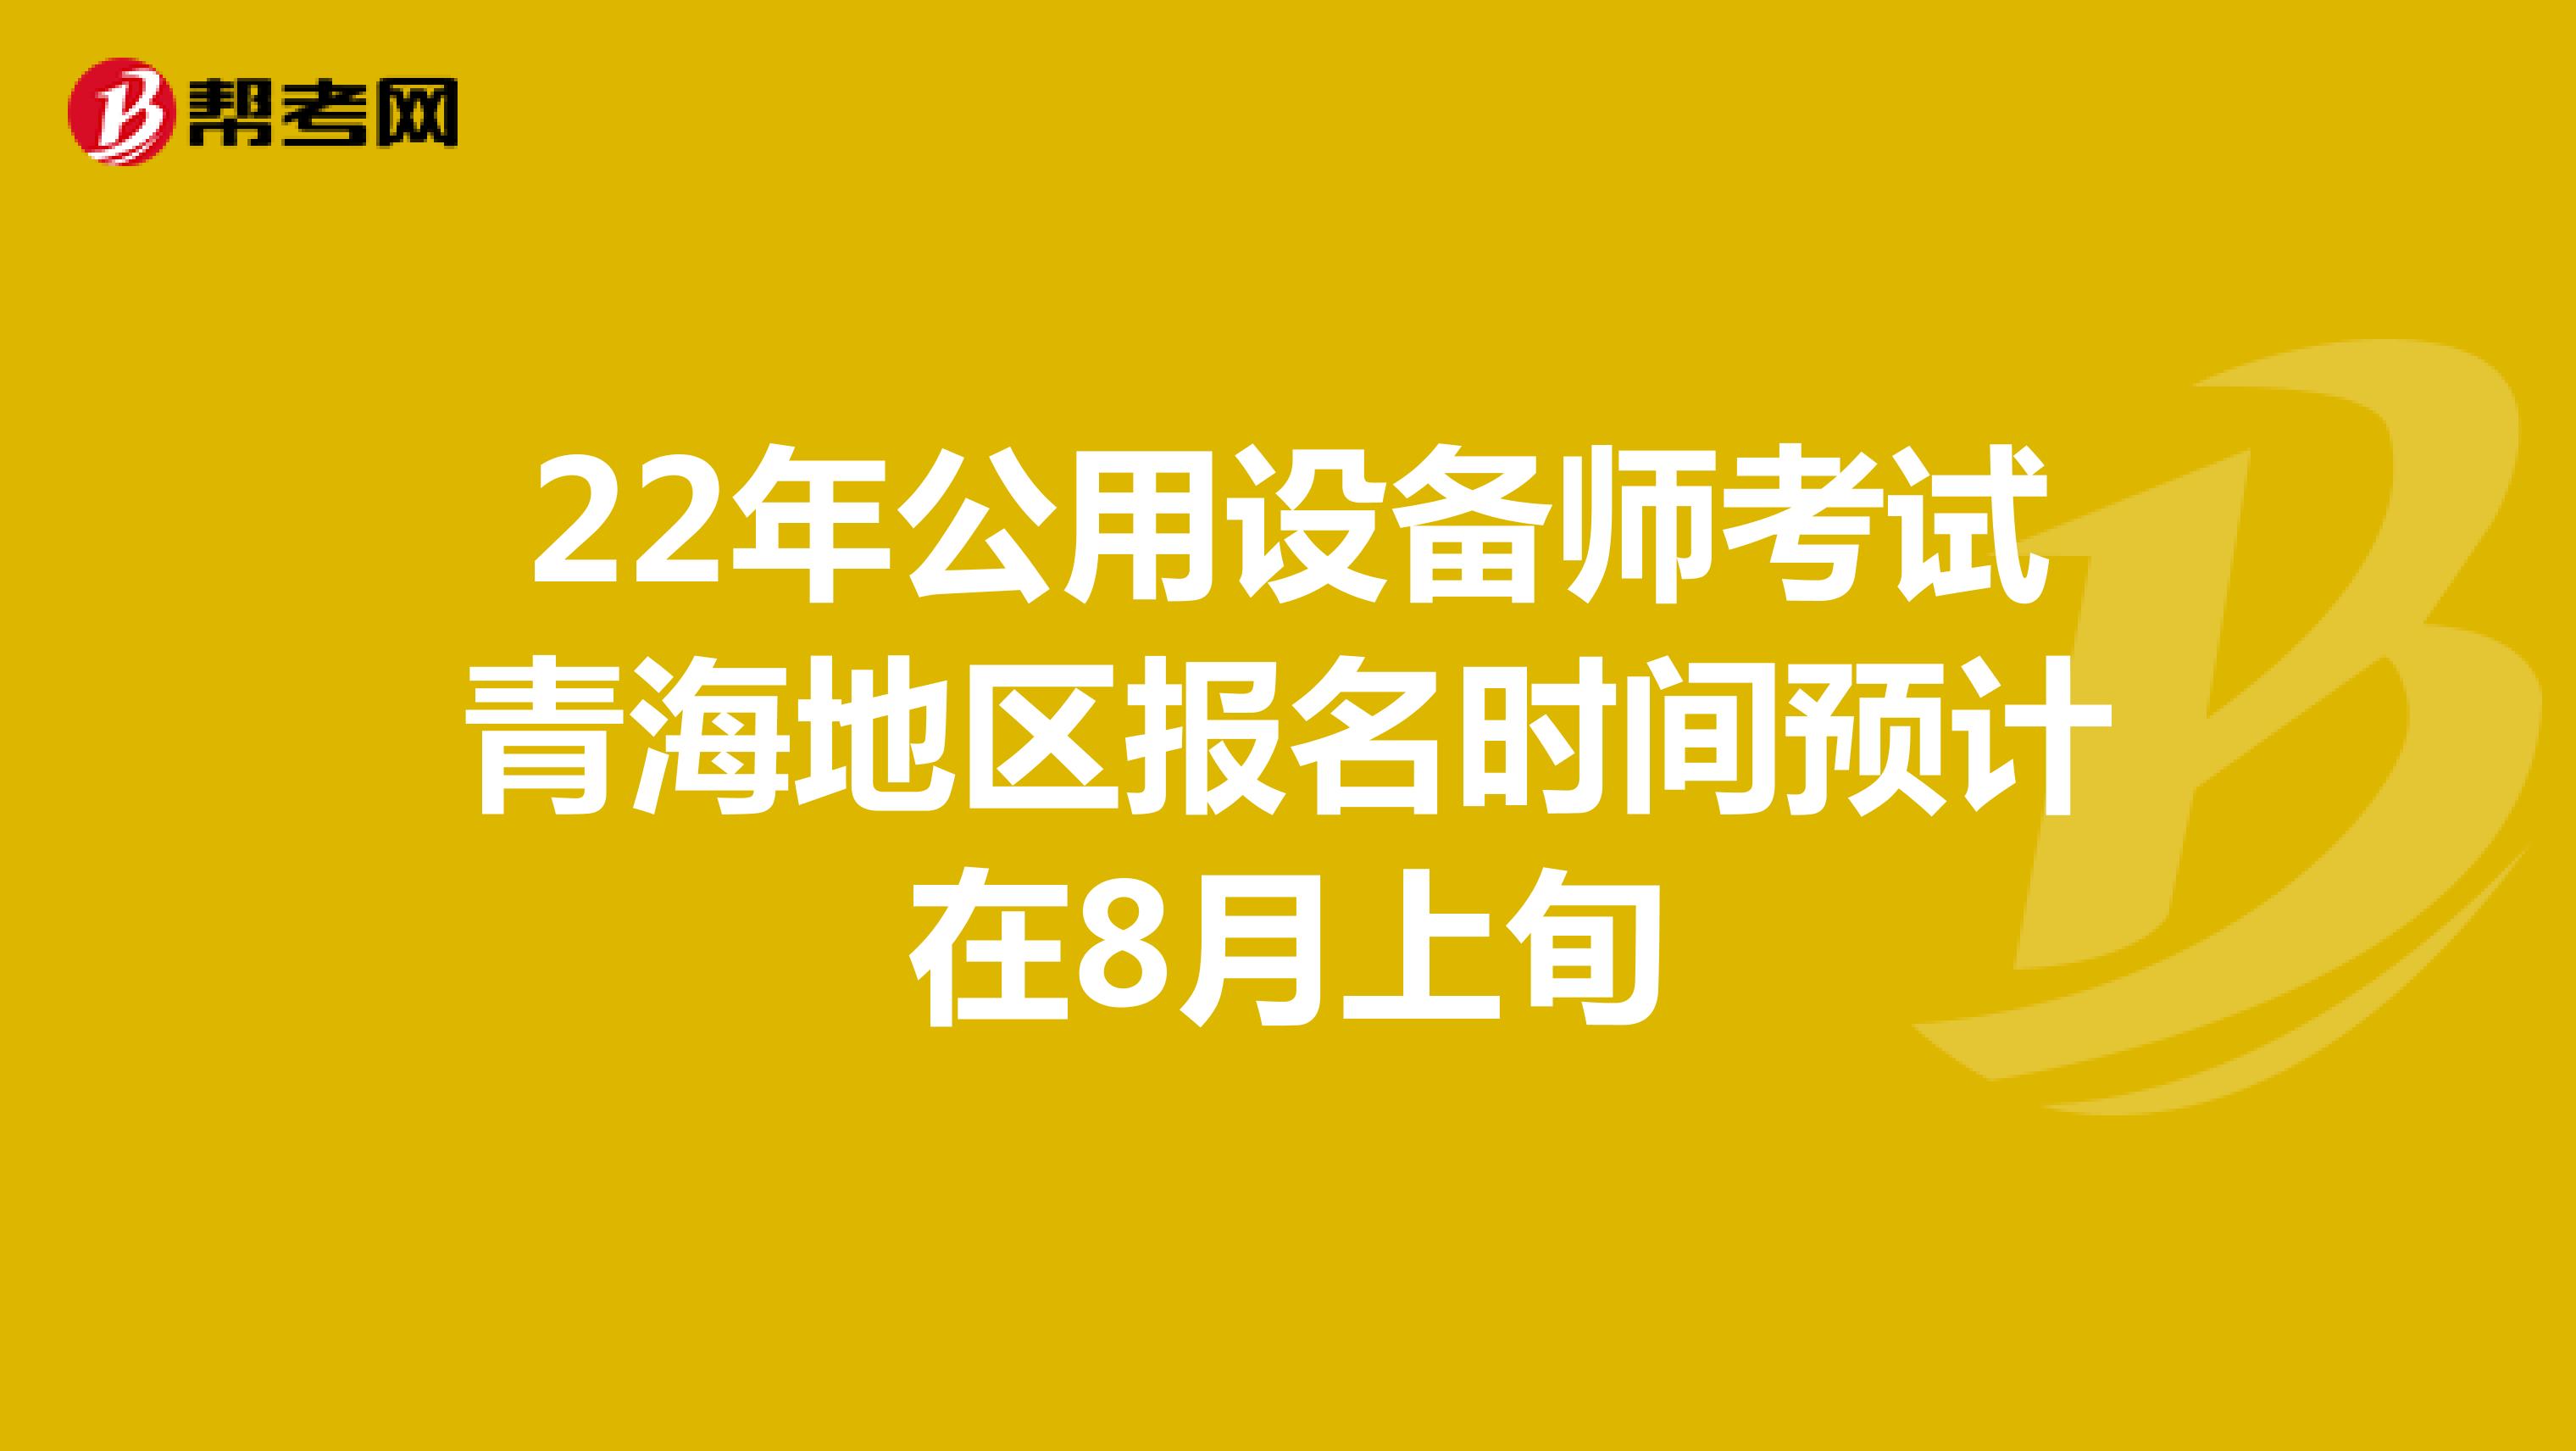 22年公用设备师考试青海地区报名时间预计在8月上旬